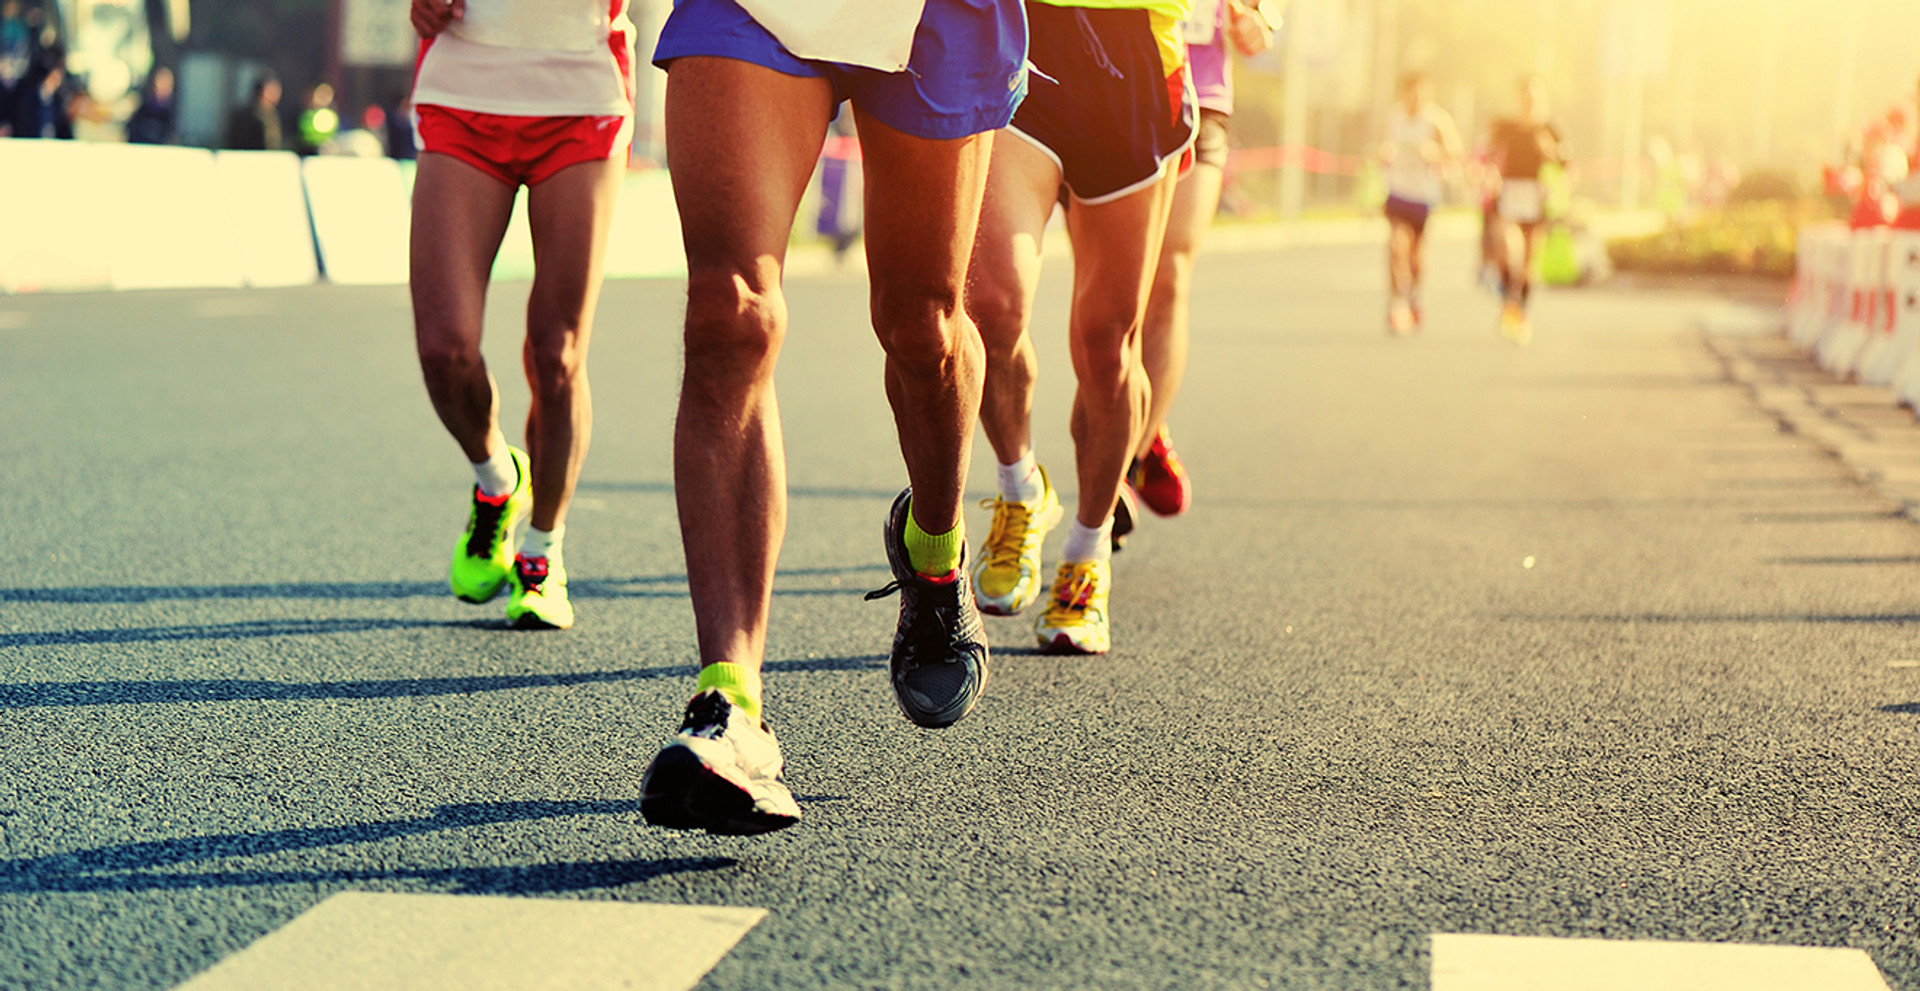 Біг – це не завжди про здоров'я. Як бігати правильно та кому це протипоказано